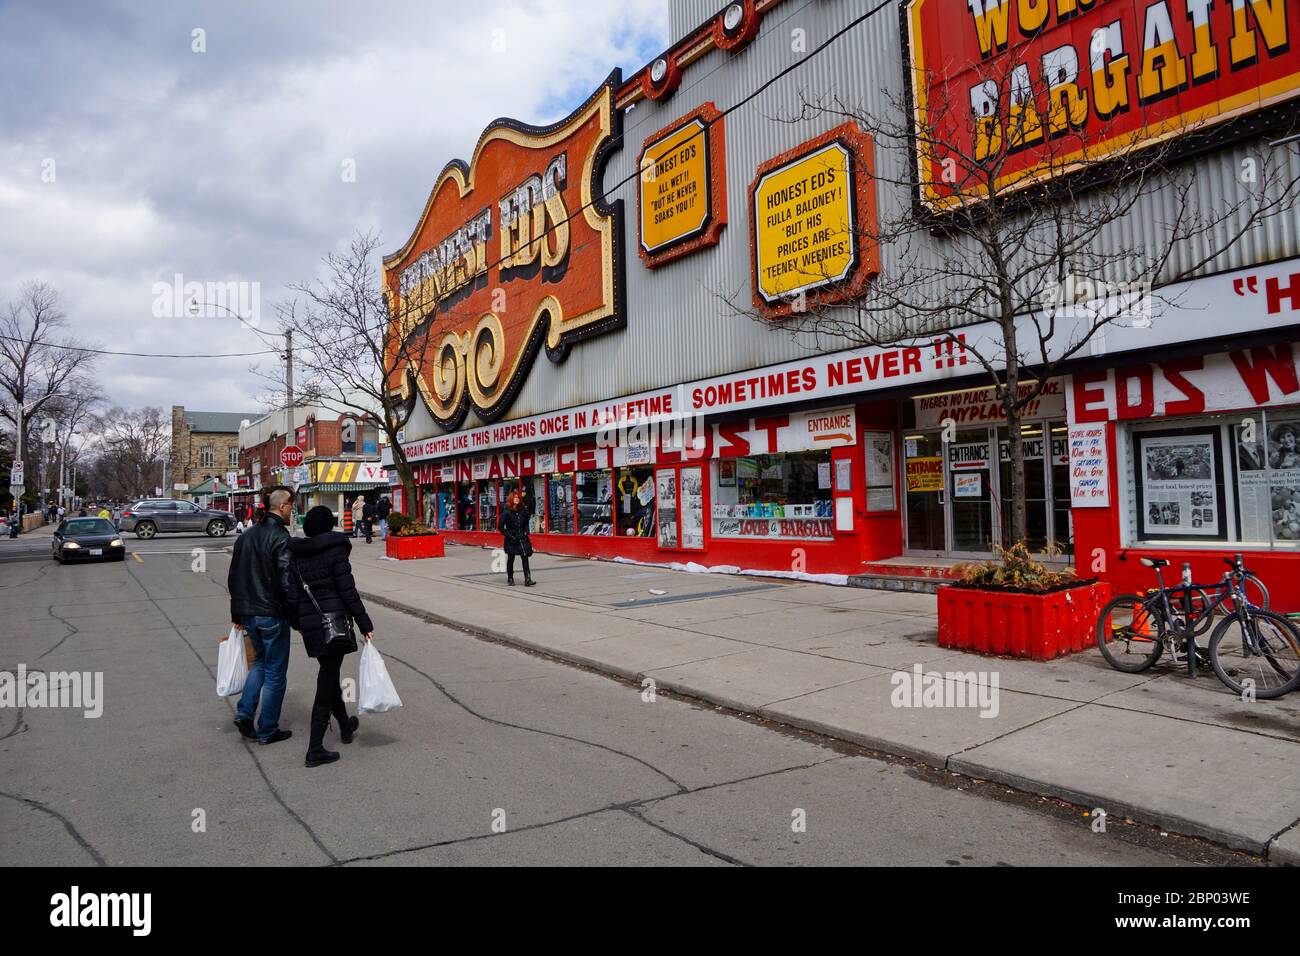 Toronto Canada - 21 March 2015 - Street scene in Toronto Ontario - Honest Eds Stock Photo